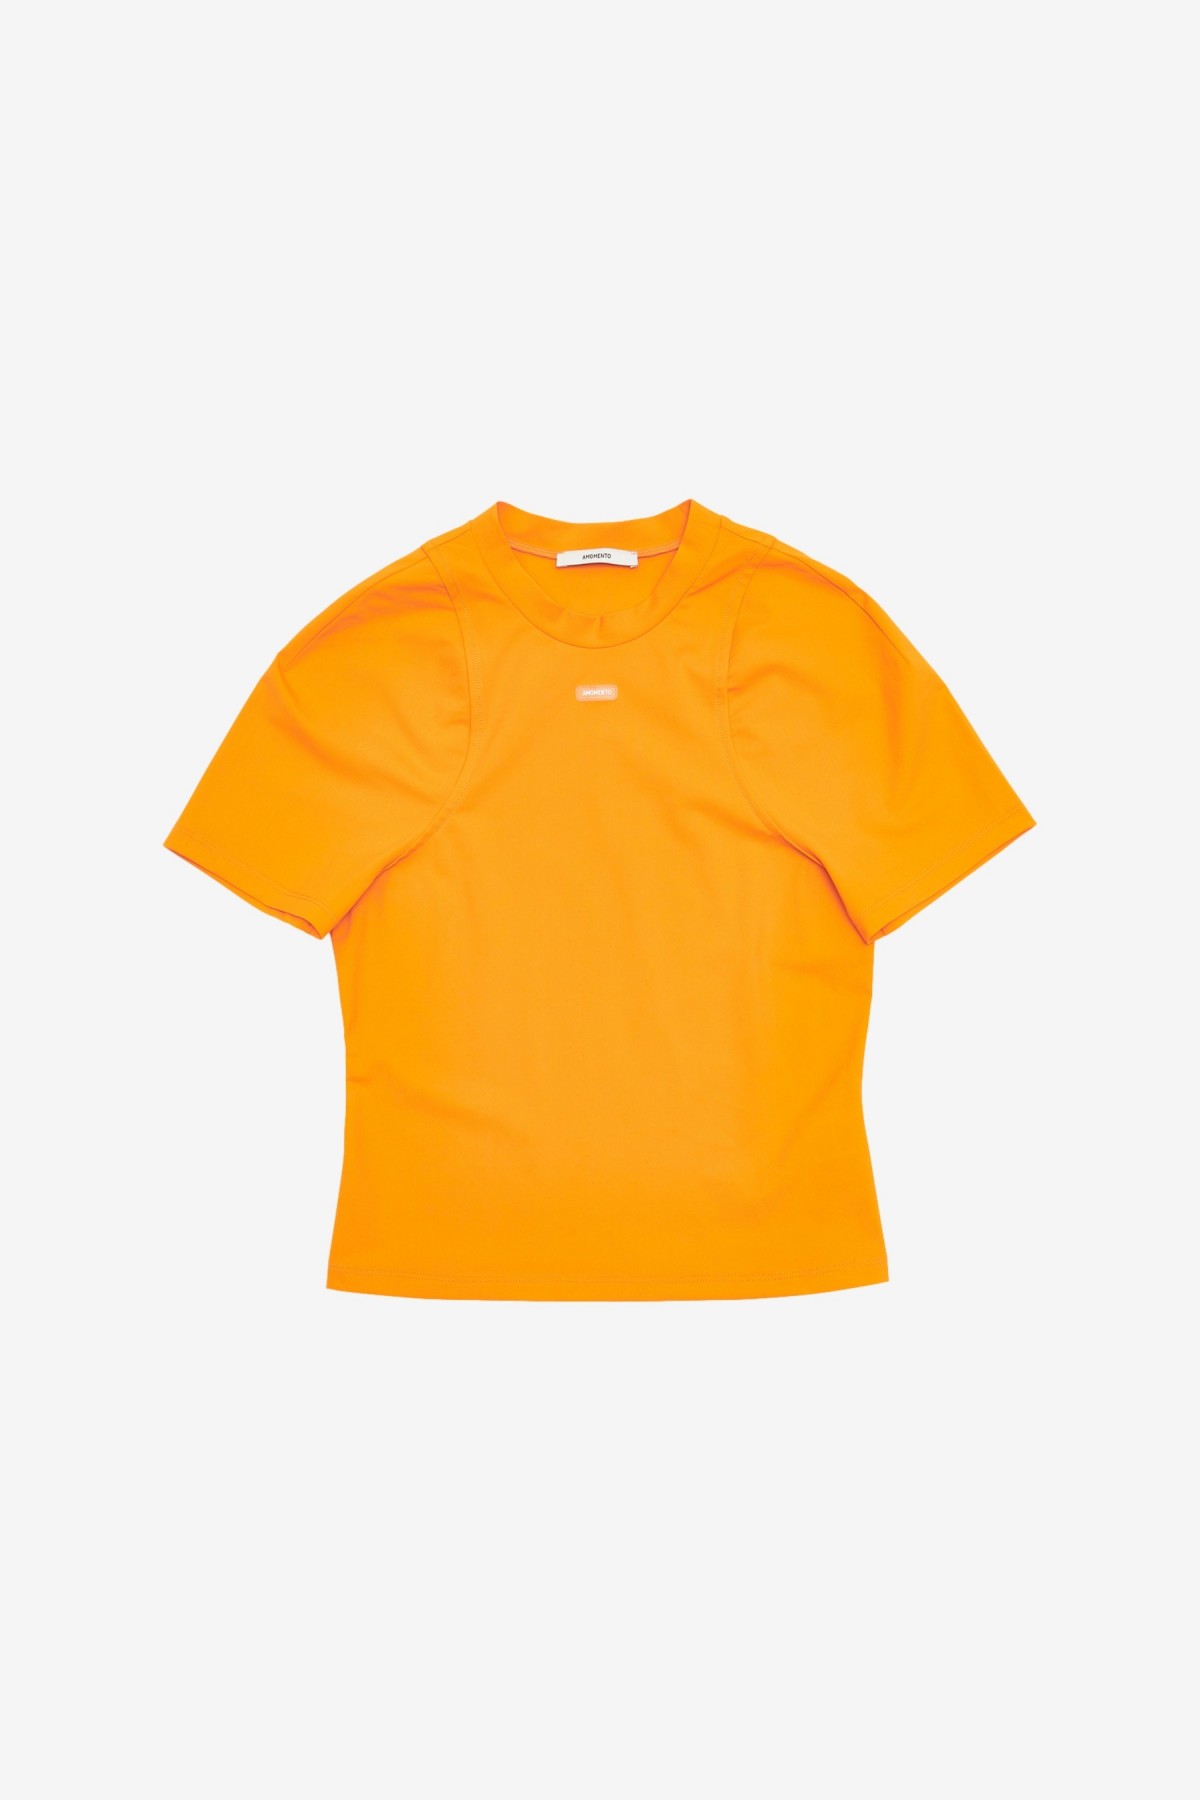 Amomento Slim Fit Logo Top in Orange